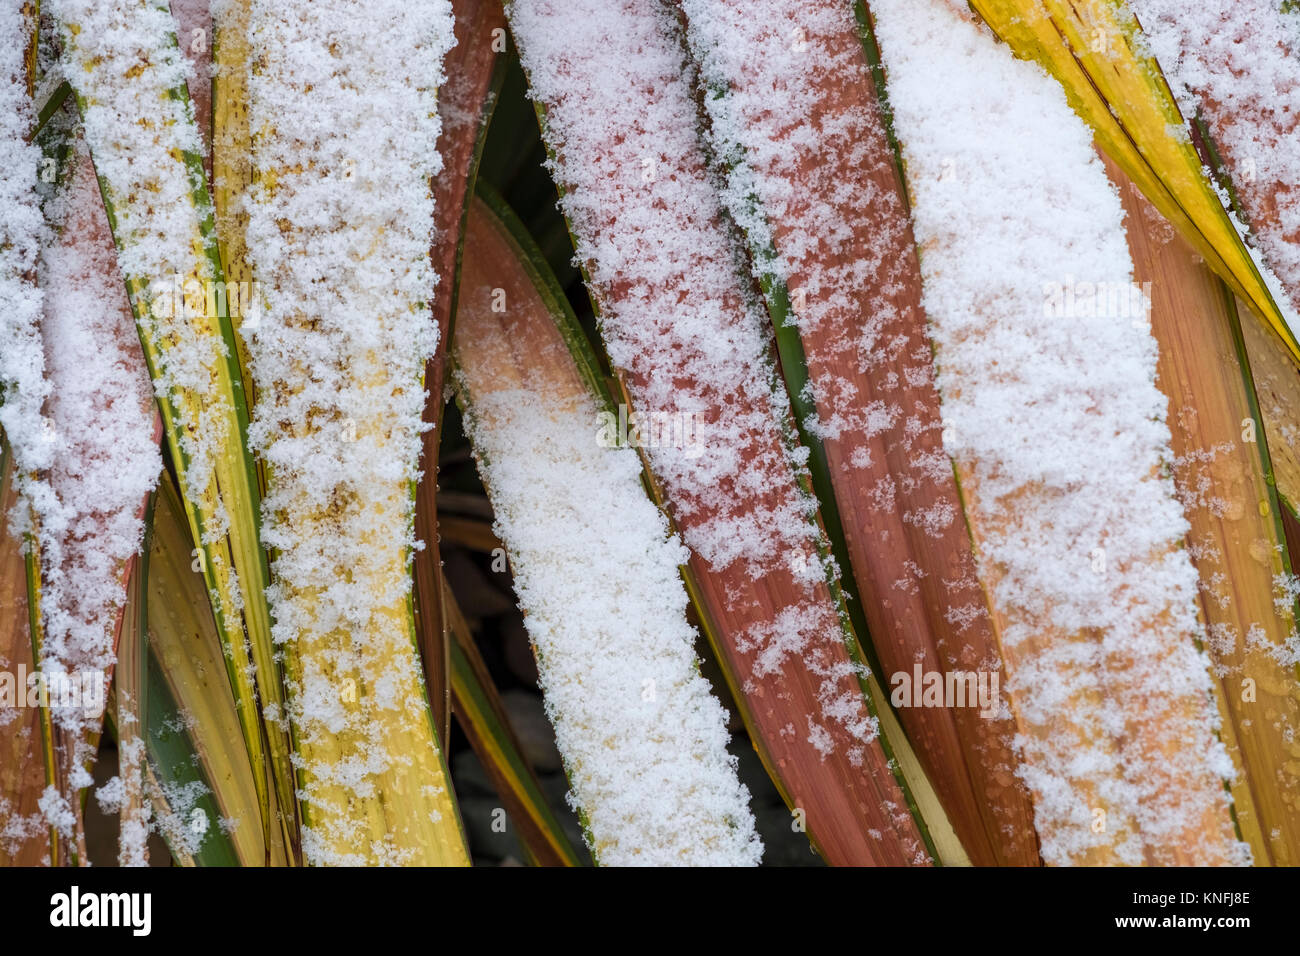 Jester Phormium Variegated Flax les feuilles des plantes dans des conditions d'hiver enneigé, England, UK Banque D'Images